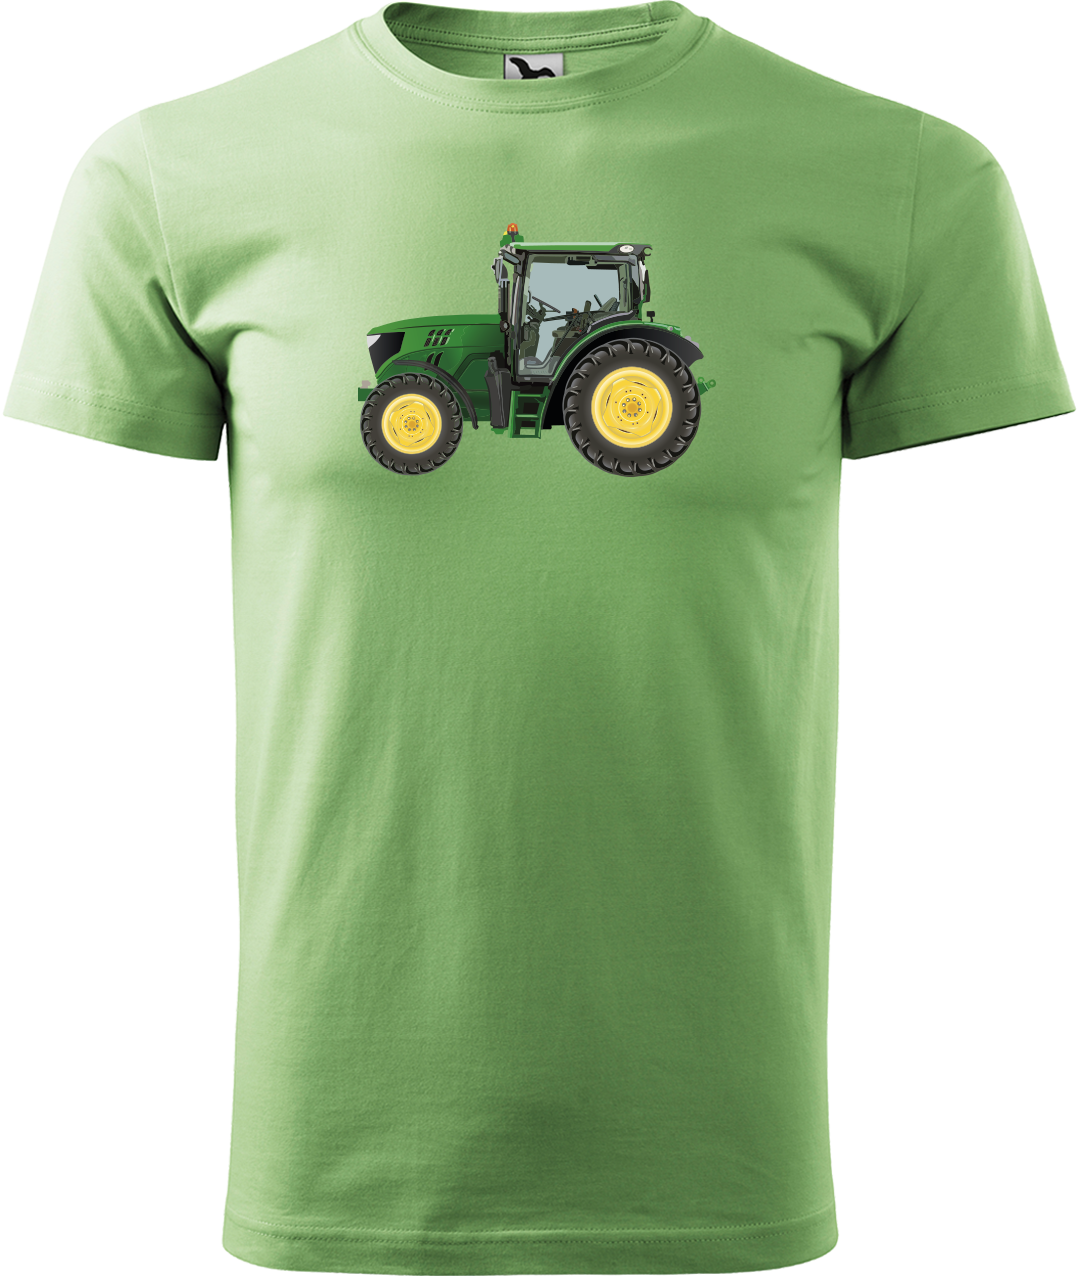 Tričko s traktorem - Zelený traktor Velikost: M, Barva: Trávově zelená (39)